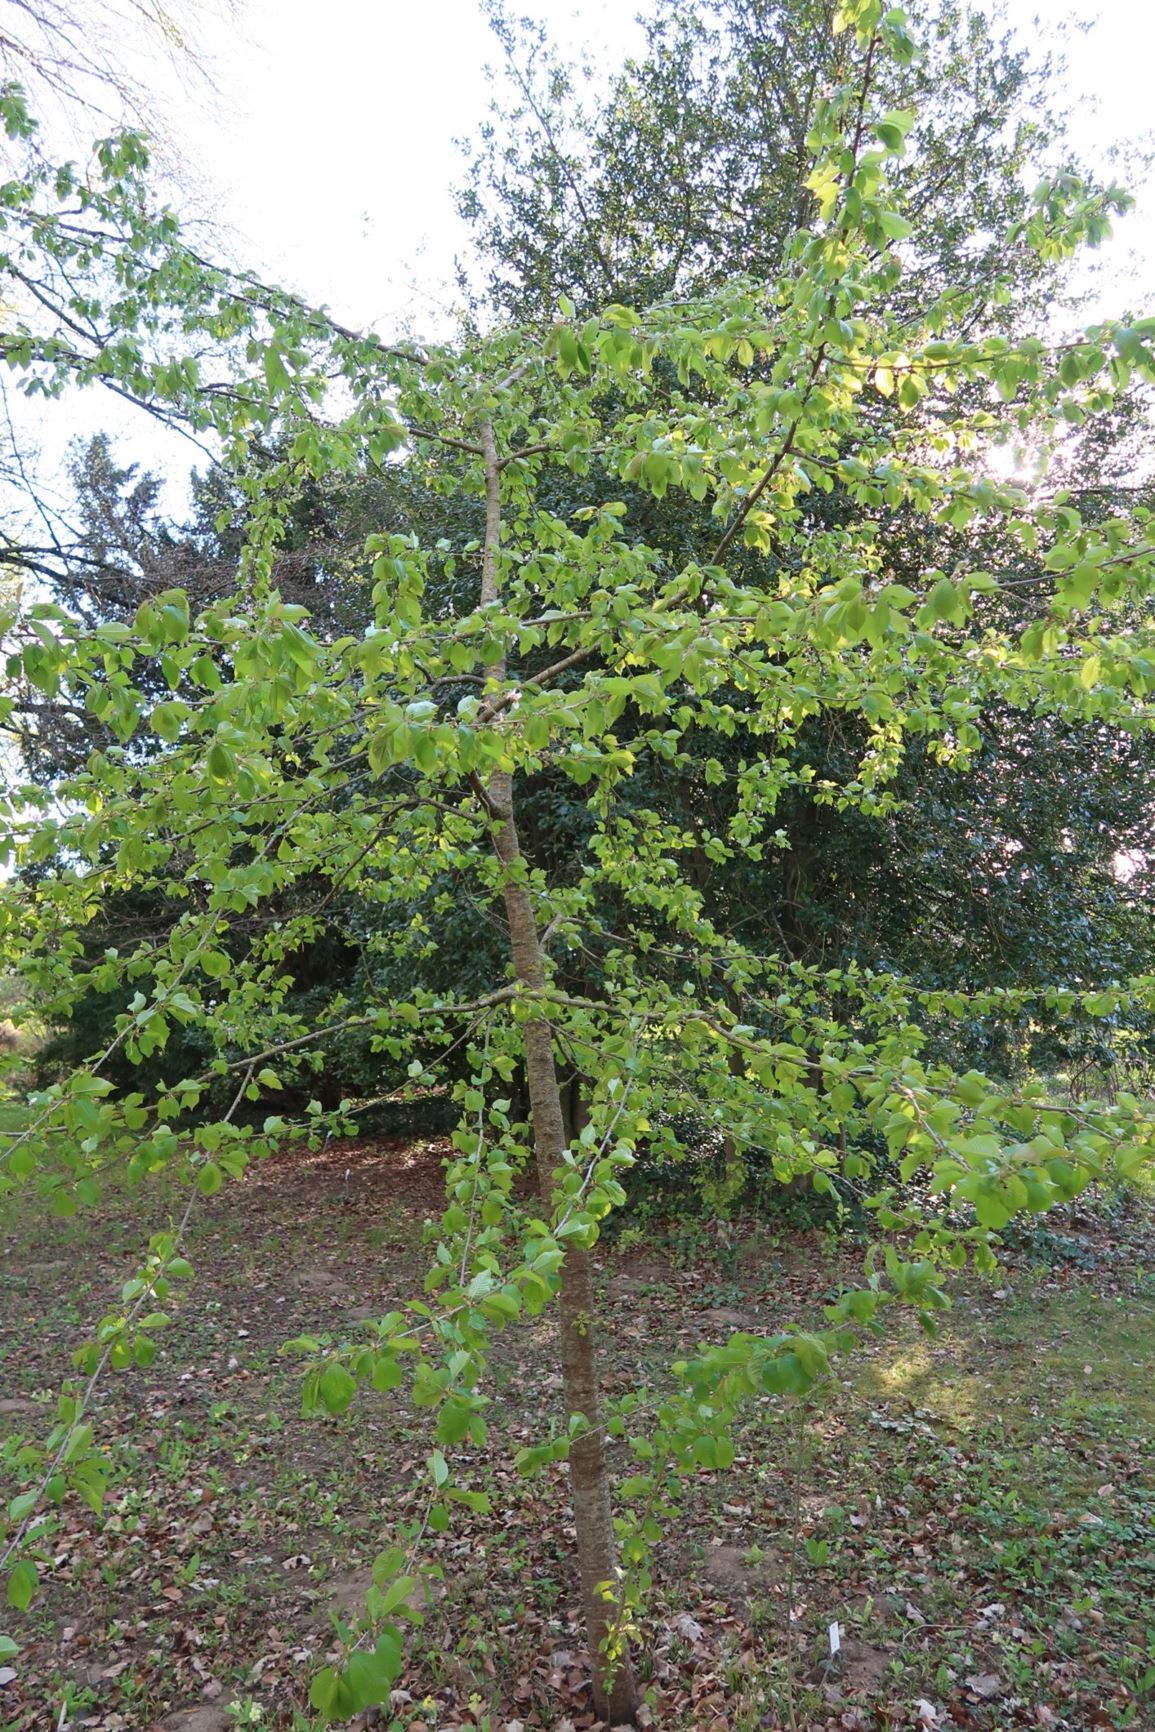 Prunus avium - Vogel-Kirsche, wild cherry